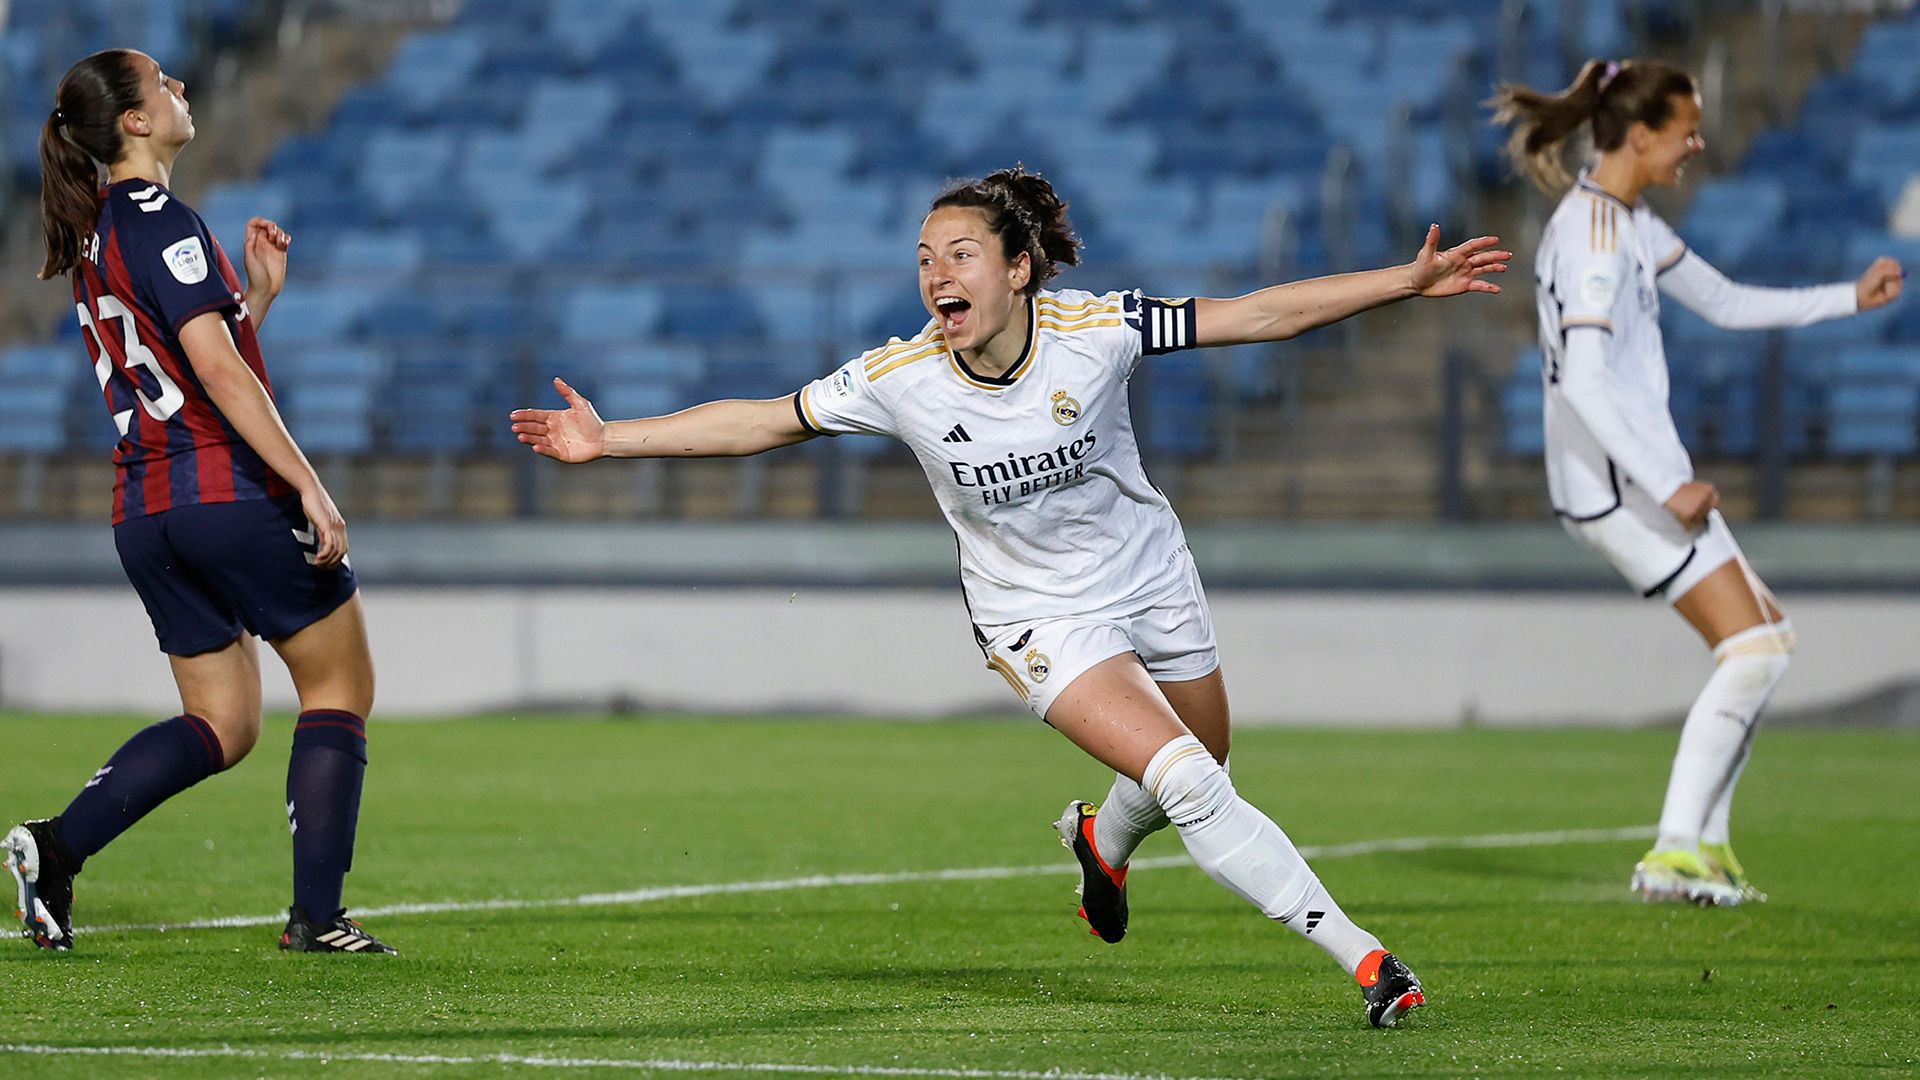 El Real Madrid vence al Éibar con un gol de Ivana